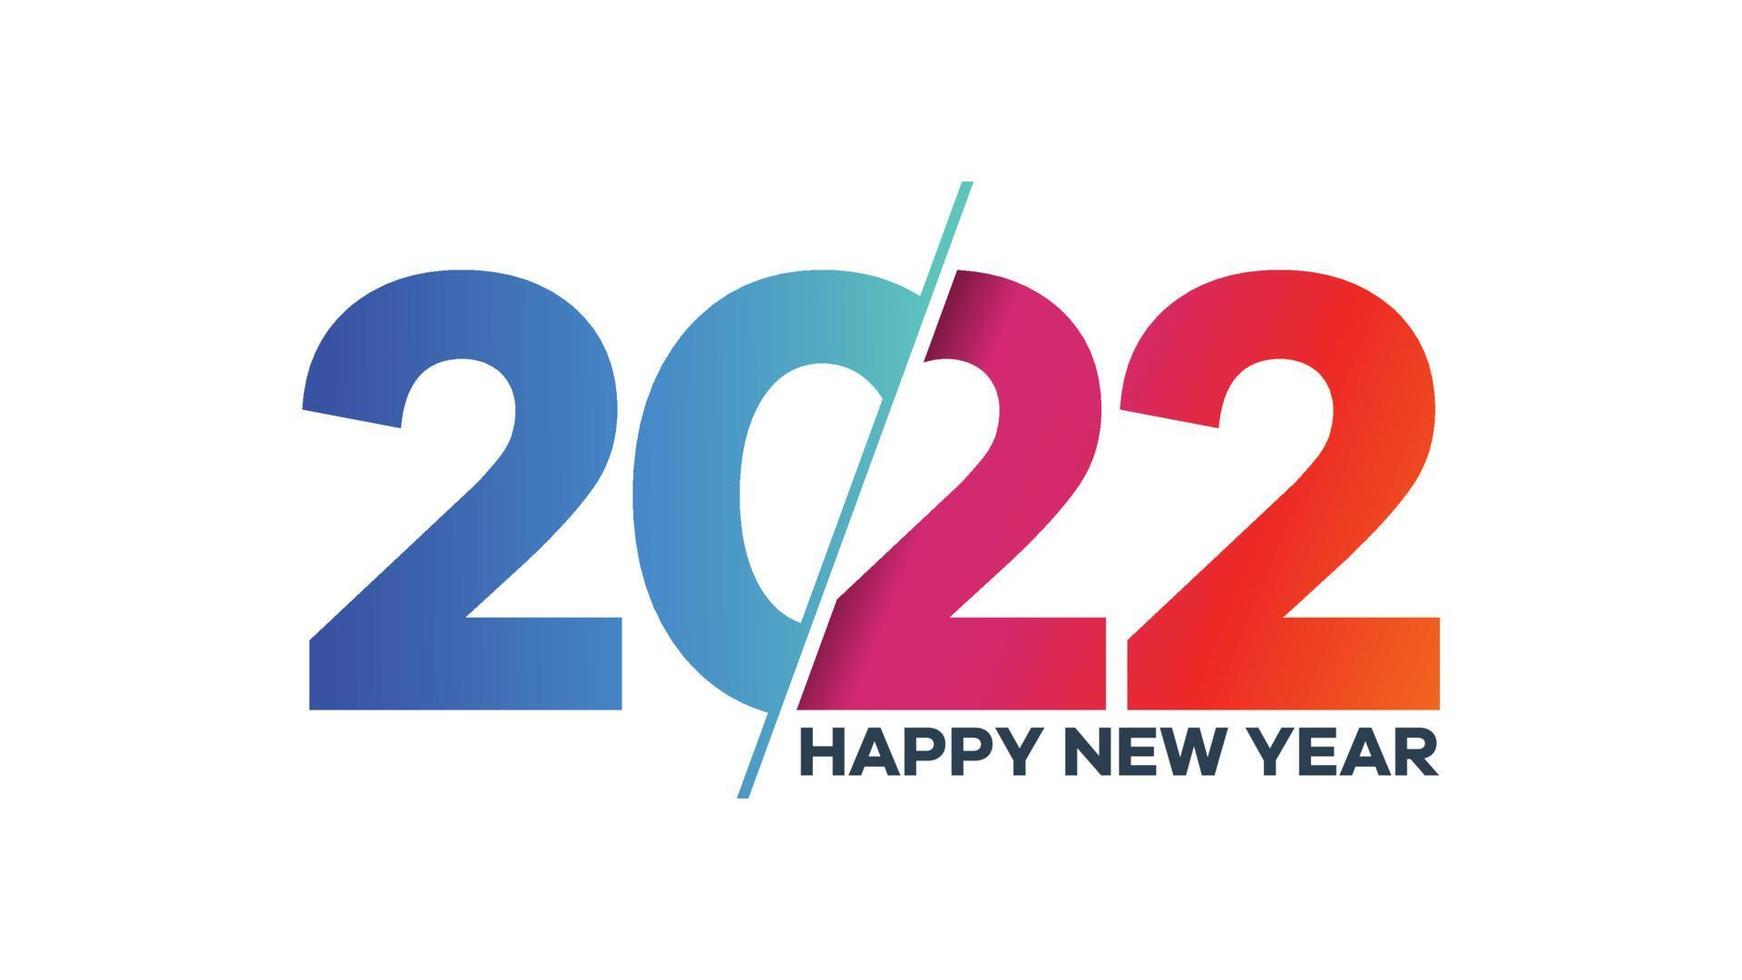 gelukkig nieuwjaar 2022 groeten met kleurrijke tekst vector